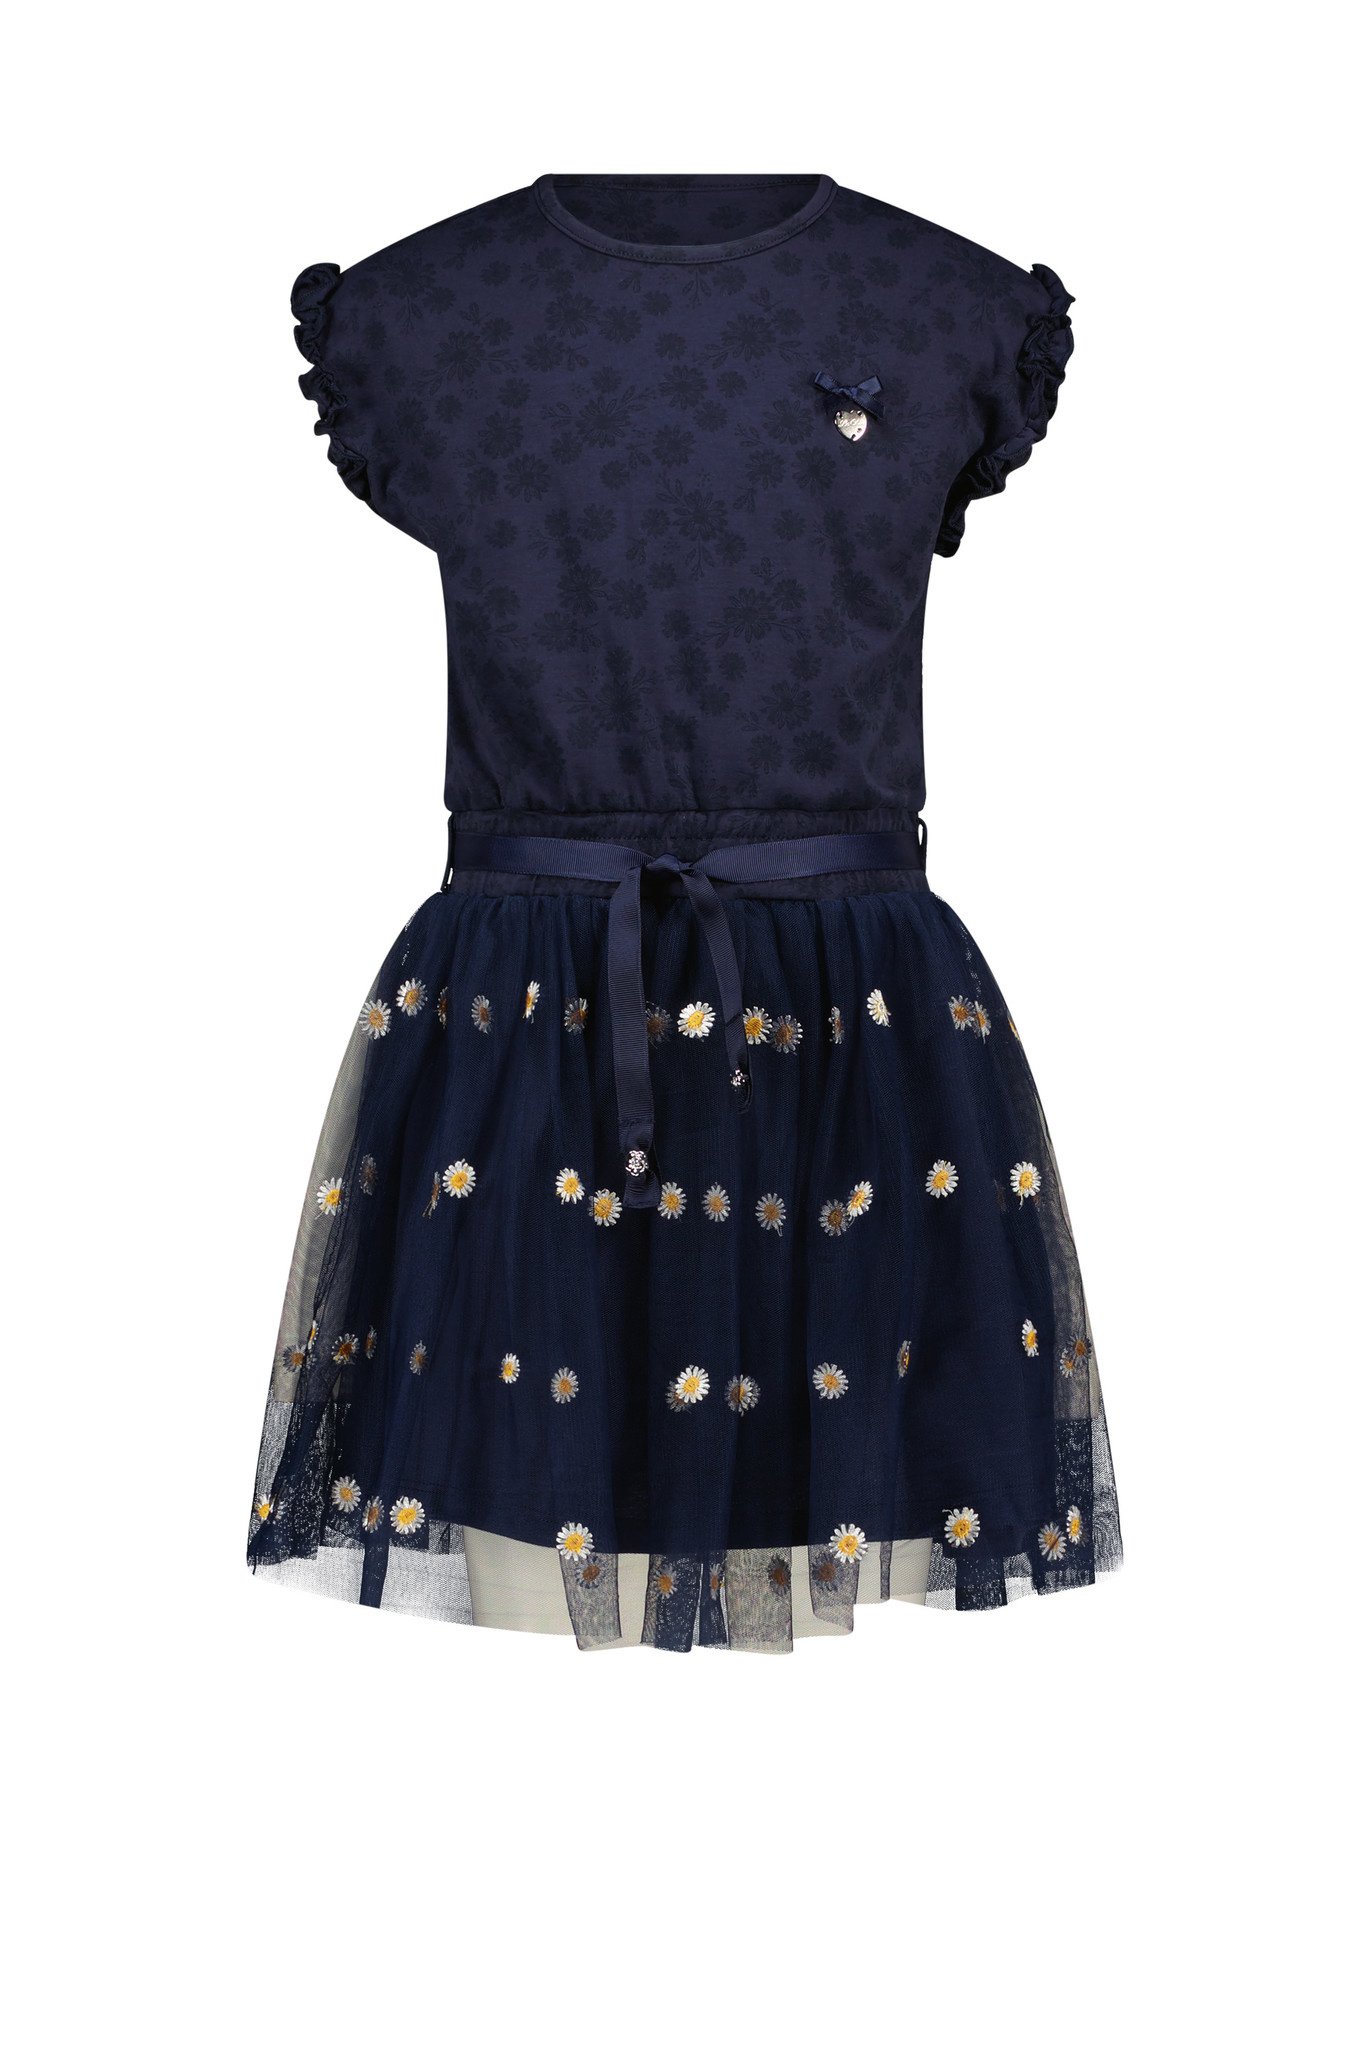 onderhoud Dwars zitten Samenwerking Le Chic jurk - online kinderkleding - merkmeisjeskleding.nl